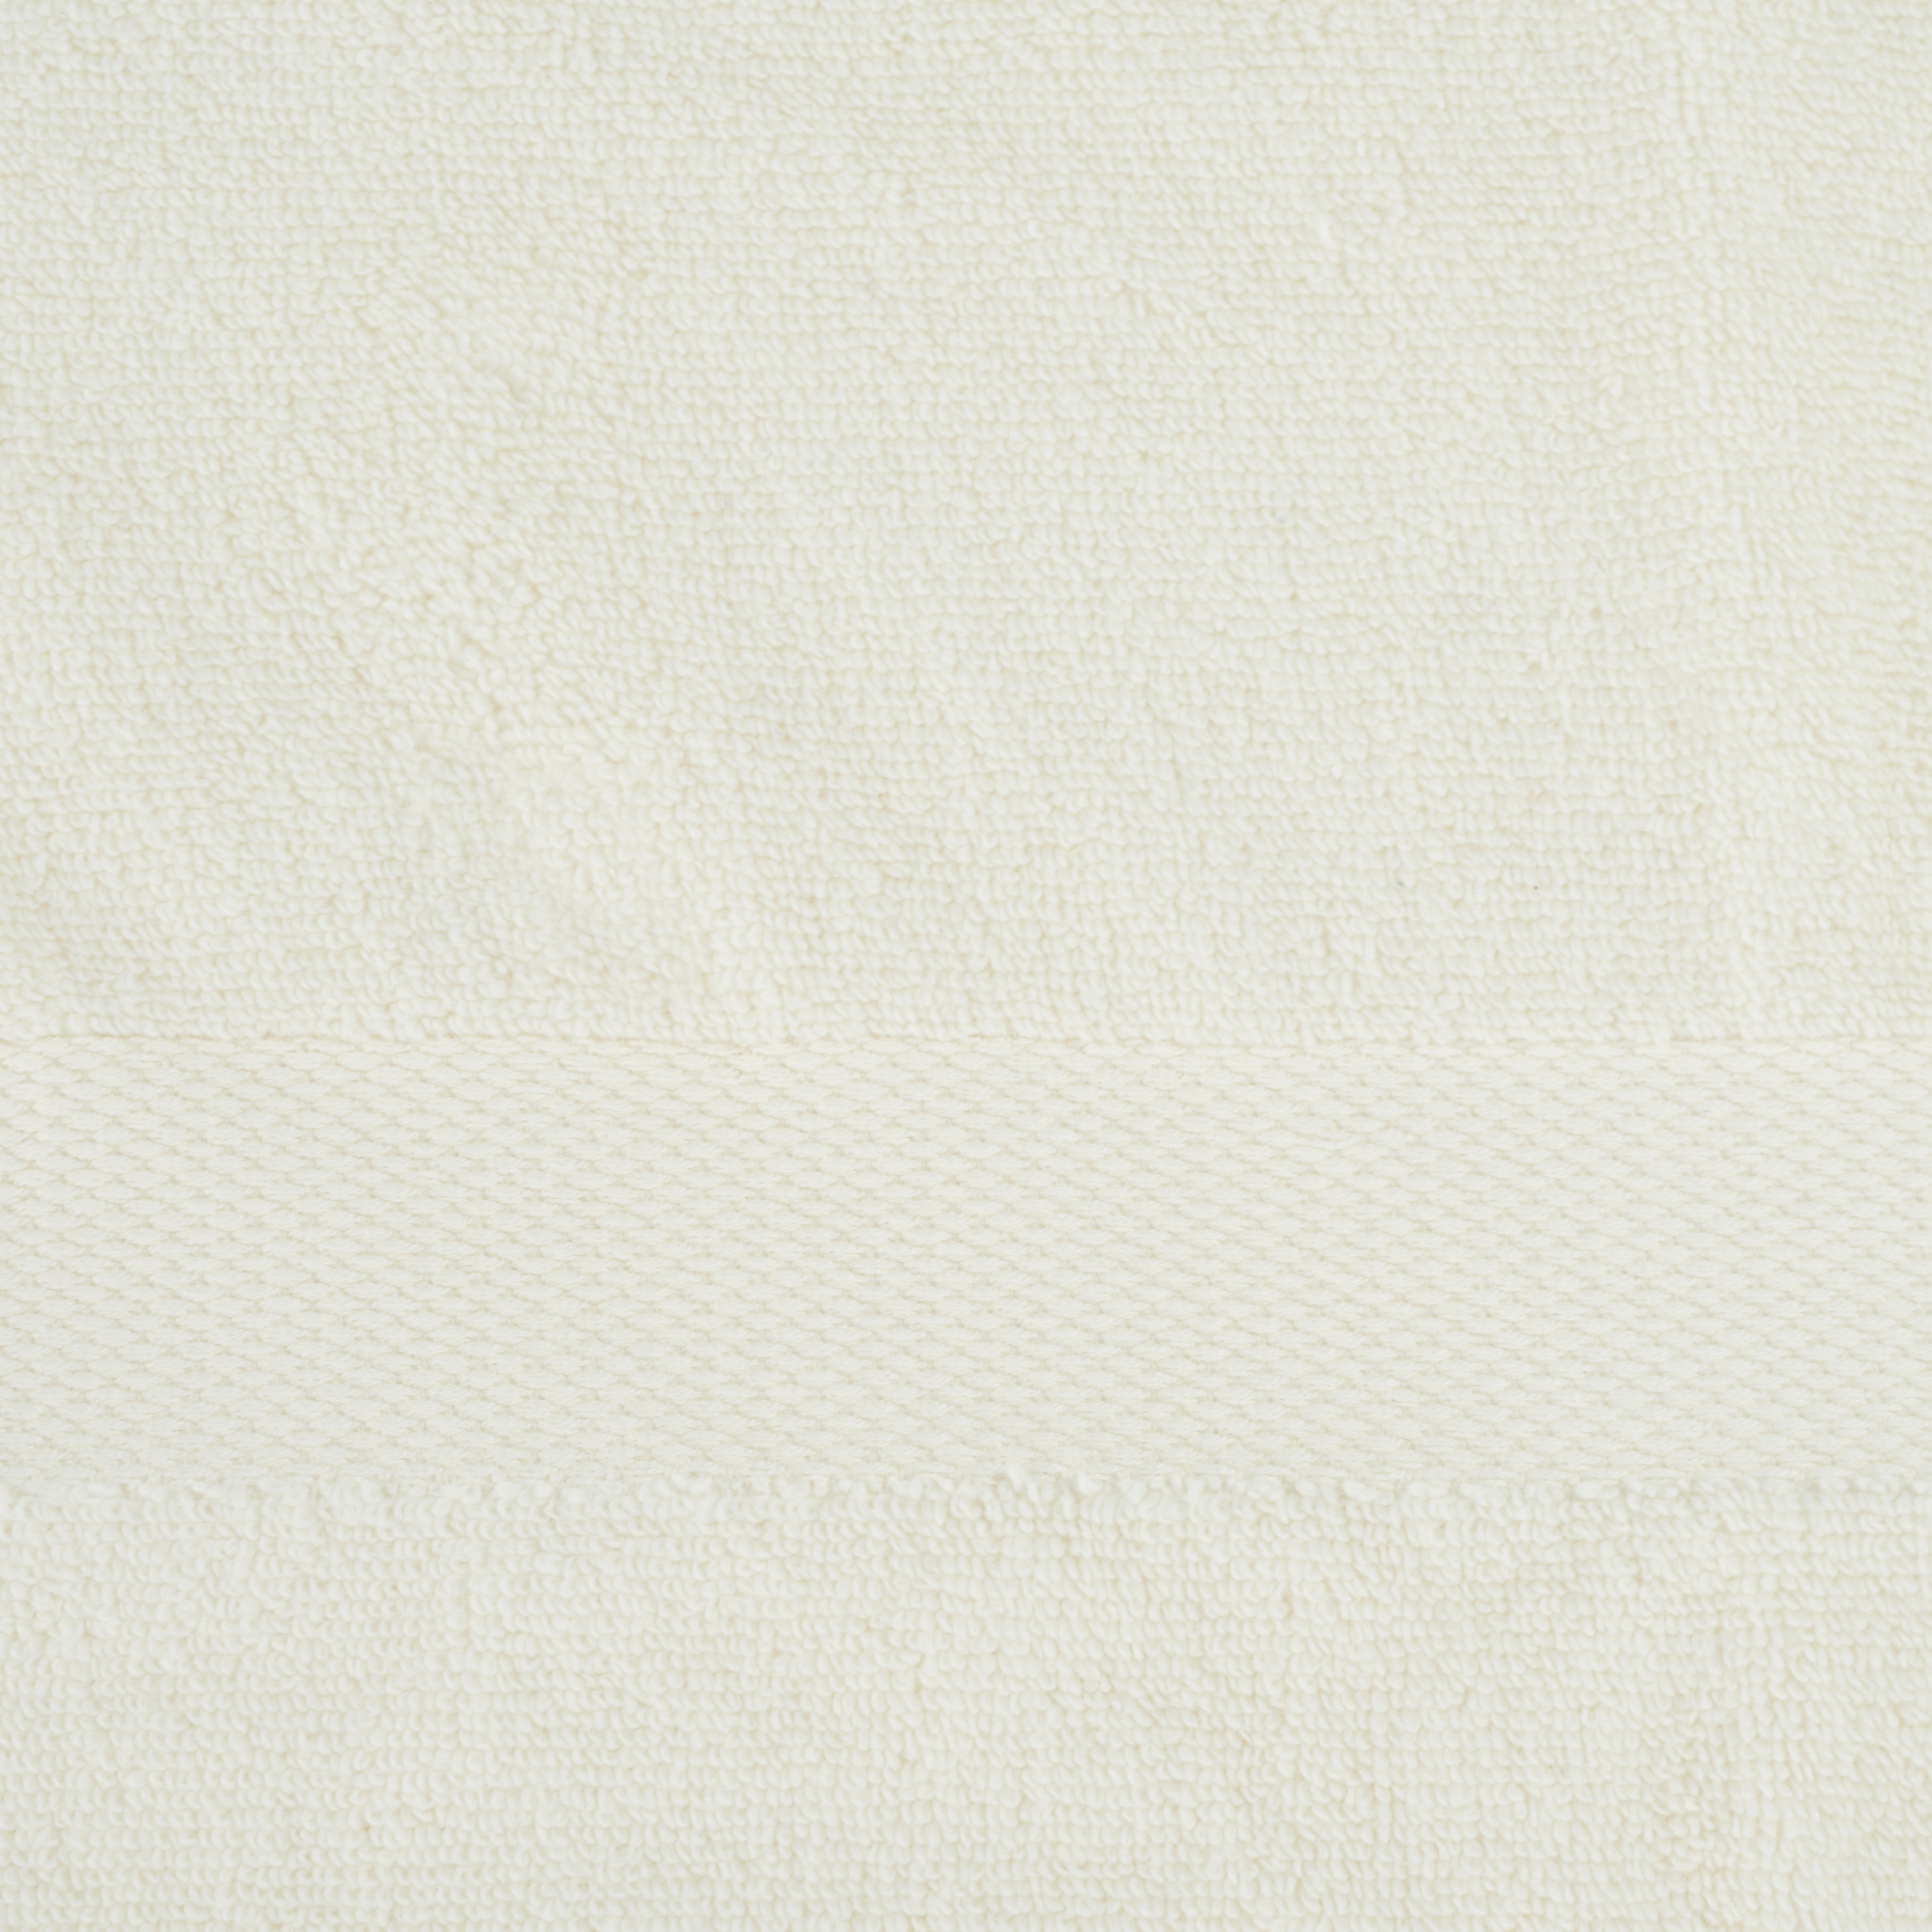 SAFAVIEH Home Collection Super Plush White 100% Cotton 8-Piece Bath Towel  Bundle Set